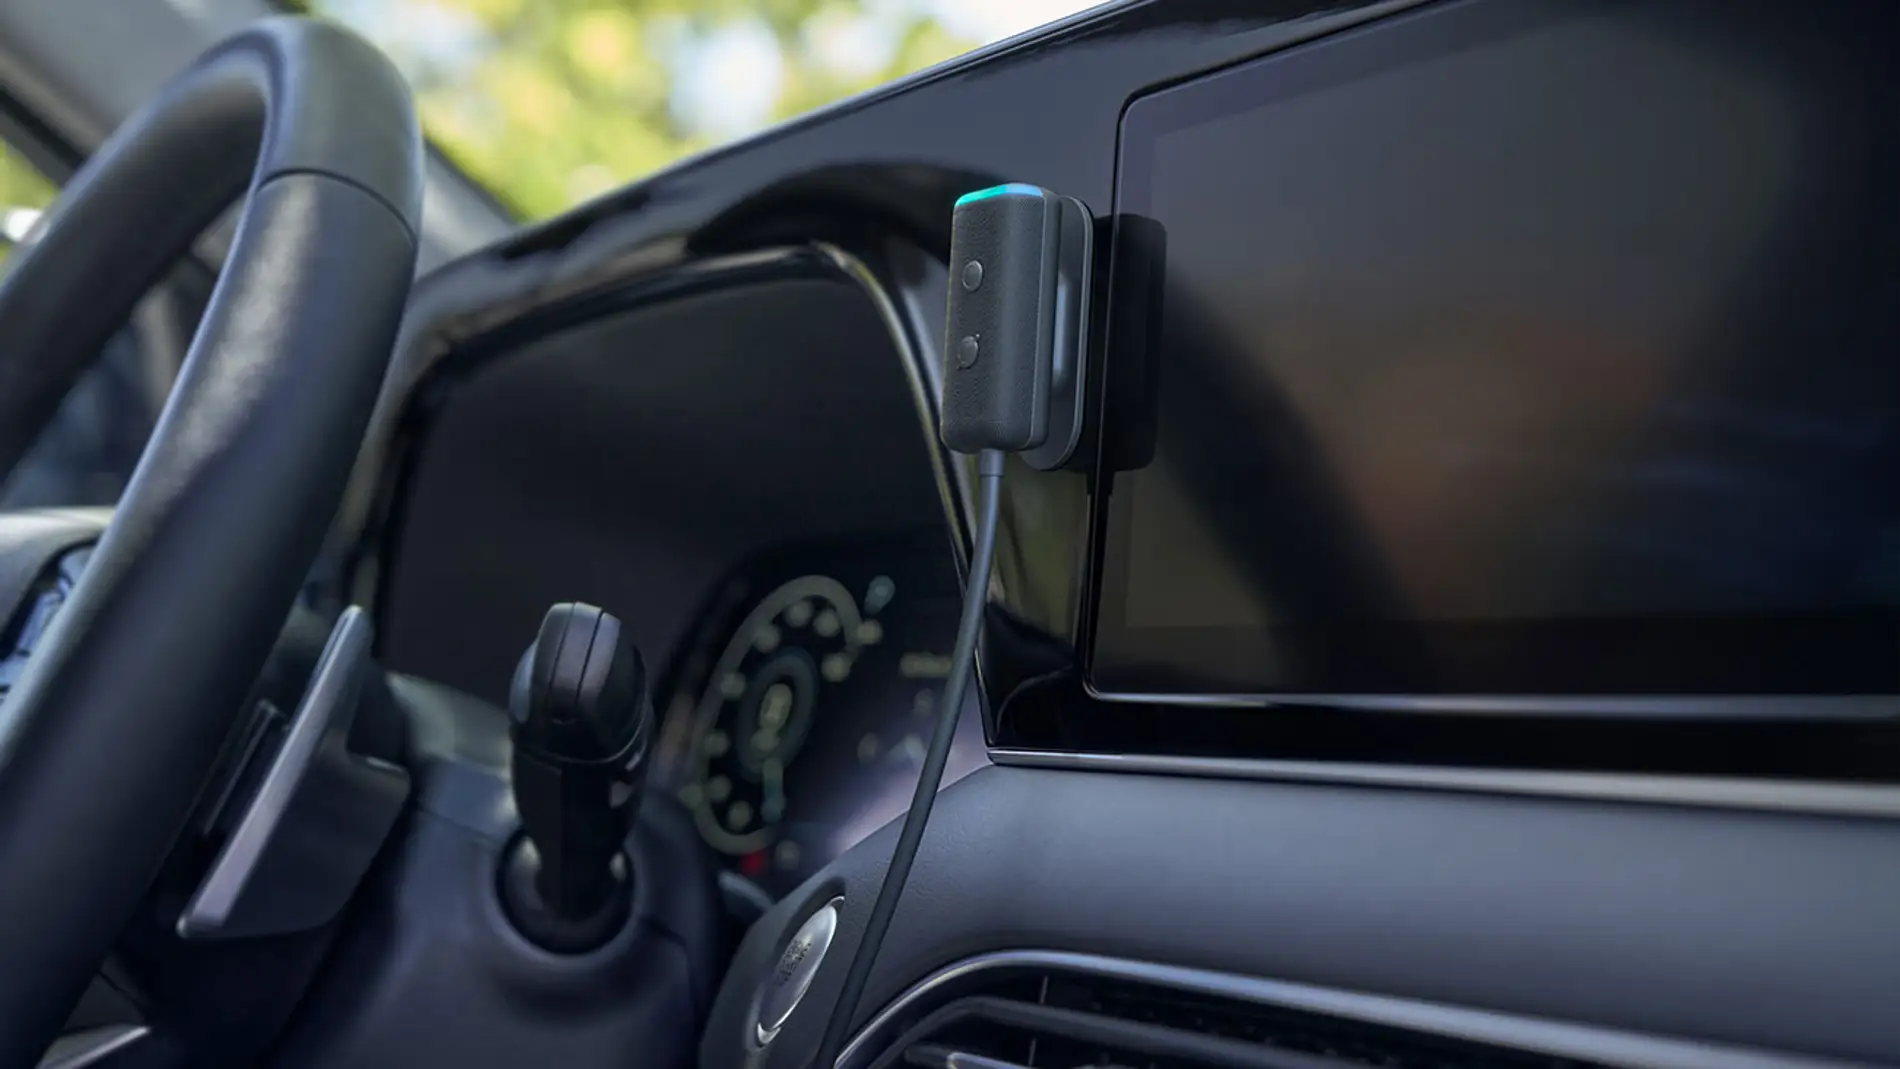 Echo Auto: La inteligencia de Alexa llega a tu coche